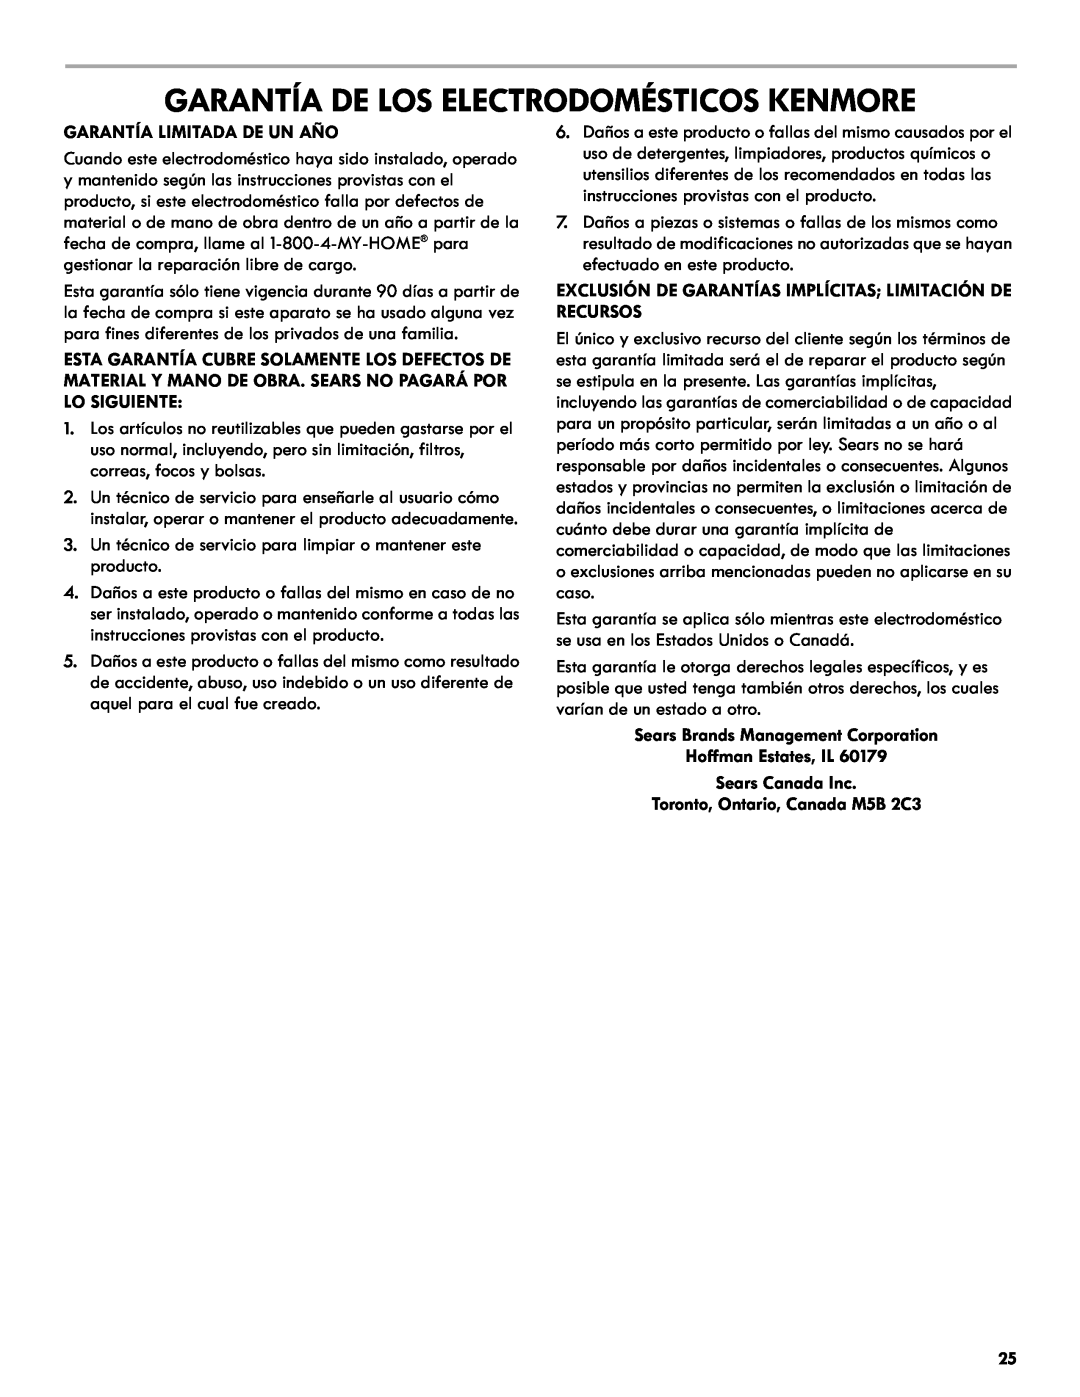 Kenmore 665.1301 Garantía De Los Electrodomésticos Kenmore, Garantía Limitada De Un Año, Toronto, Ontario, Canada M5B 2C3 